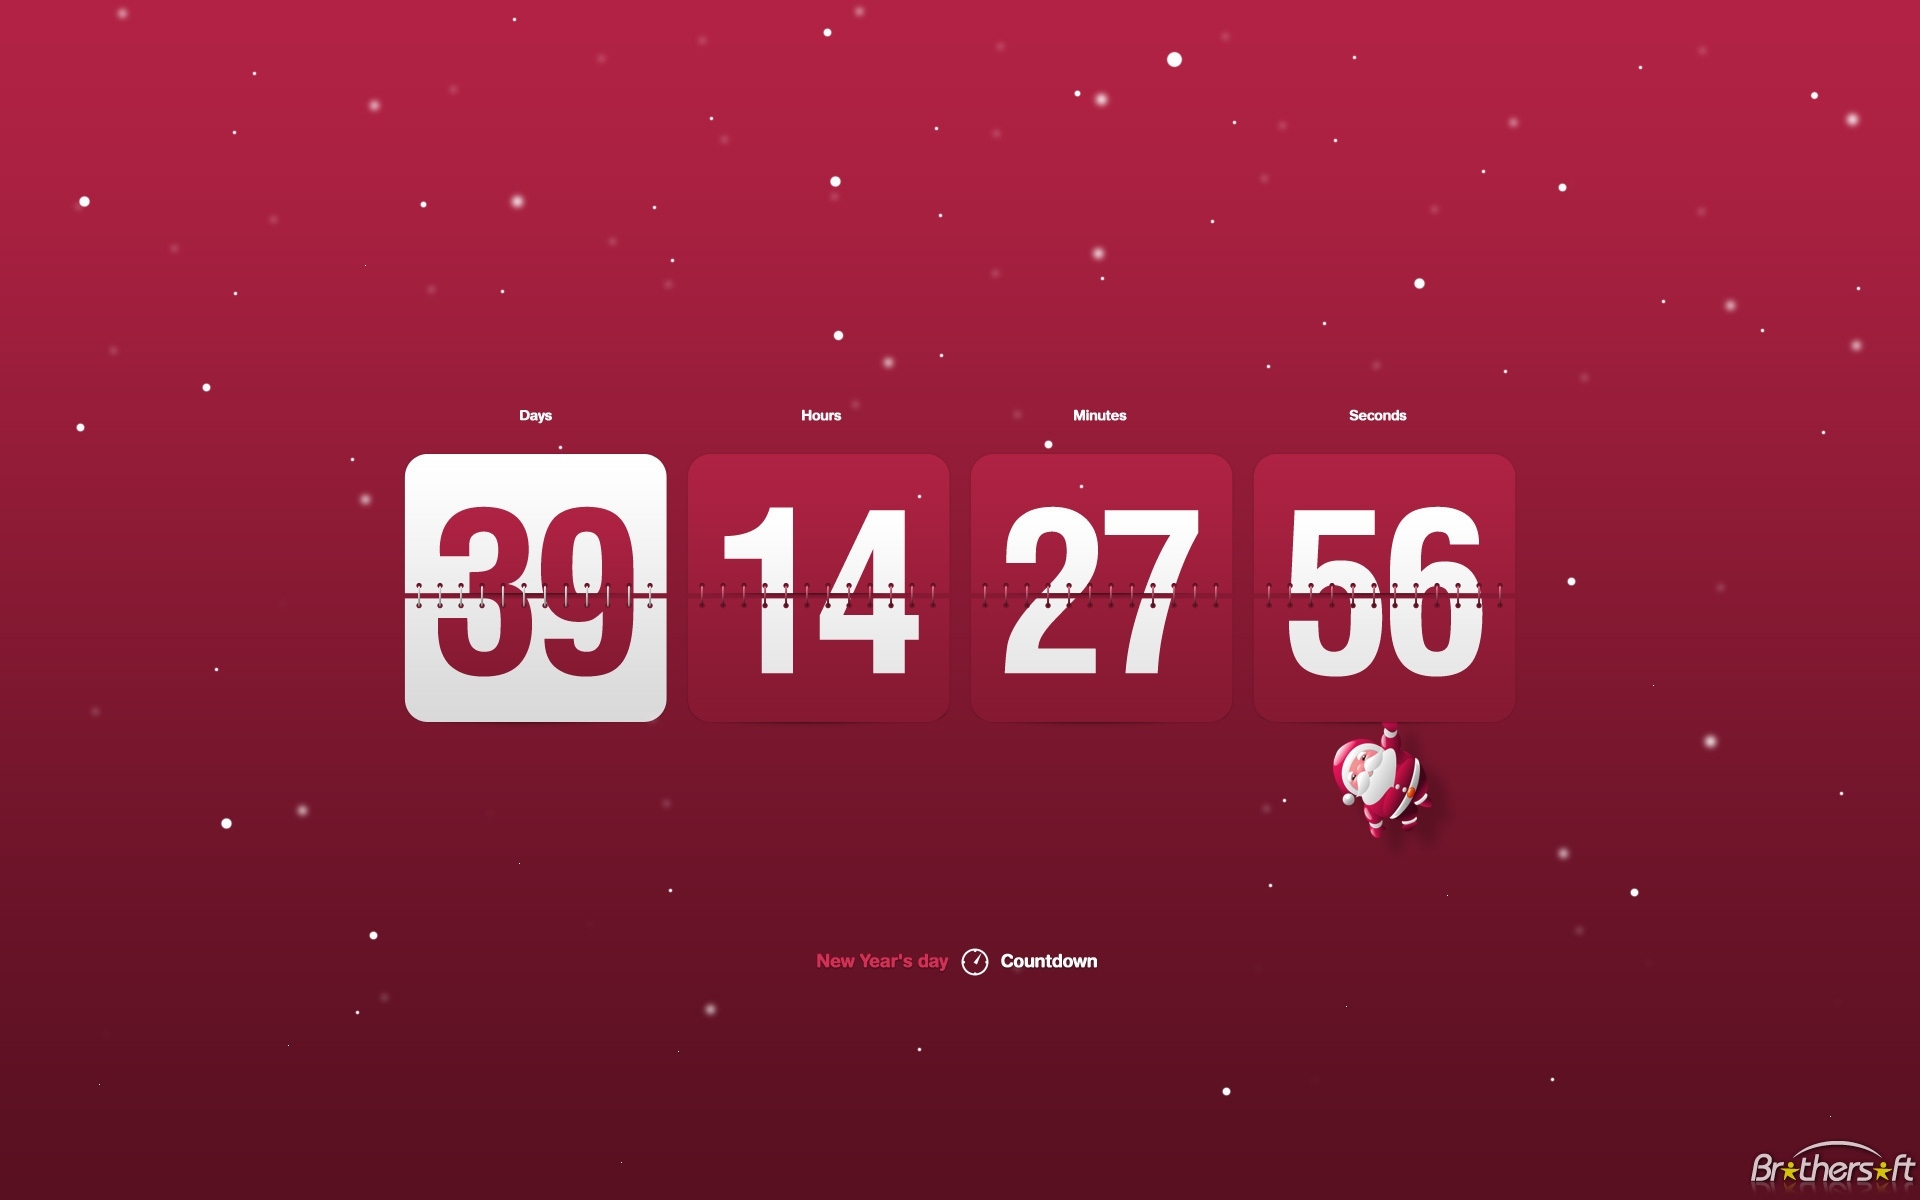 Wallpaper Countdown Clock Free - Wallpapersafari Windows 7 Countdown Calendar